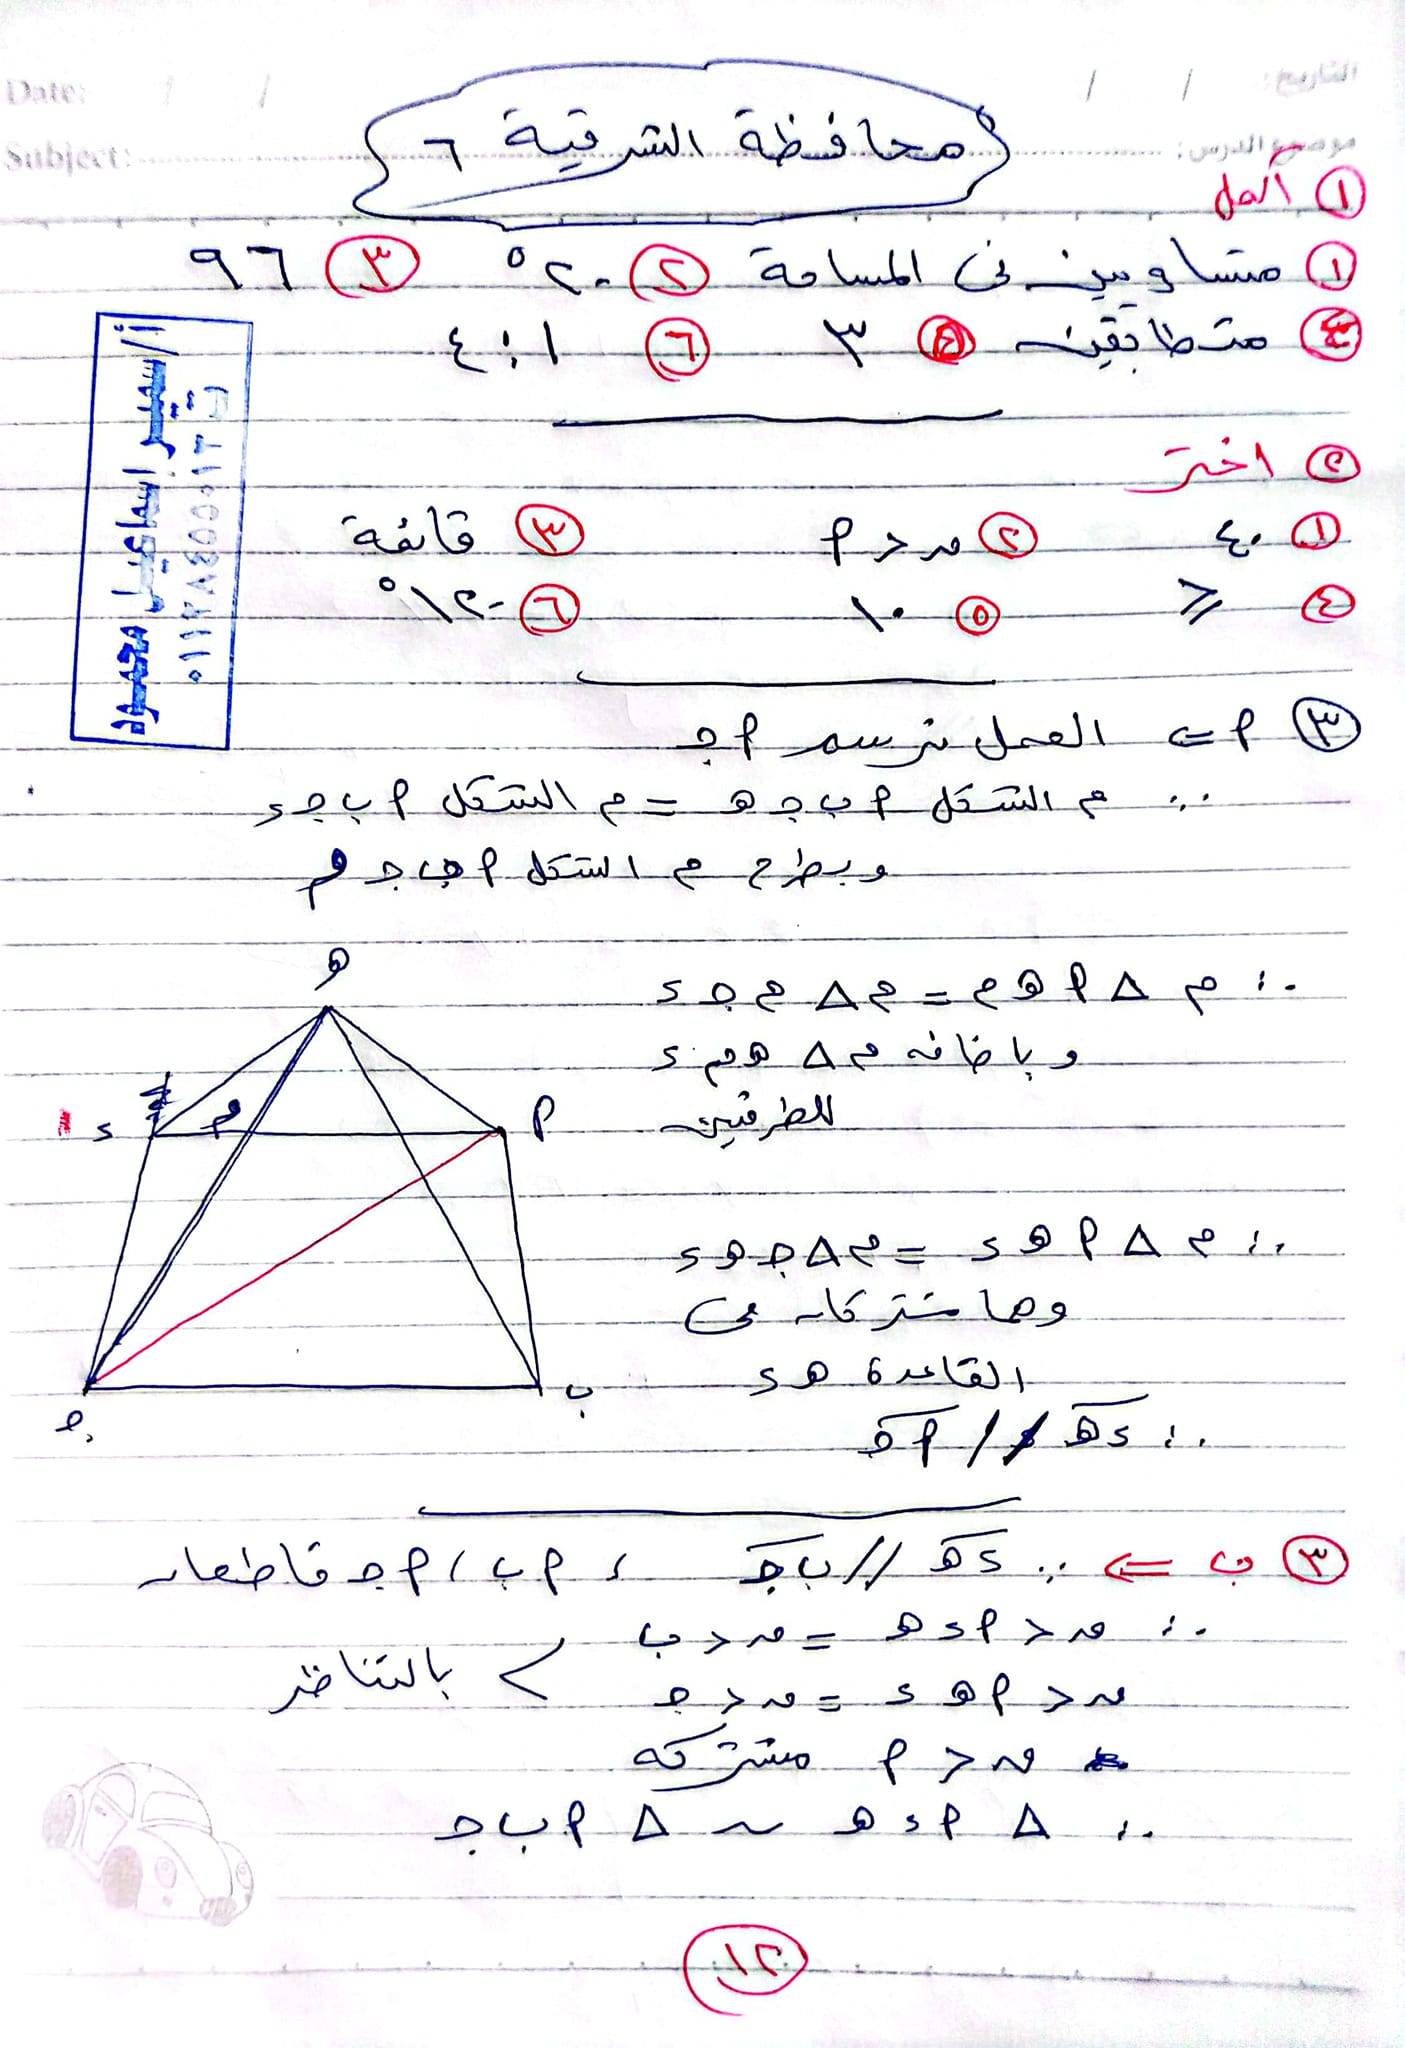 مدرس دوت كوم حل أول 6 محافظات هندسة فى الرياضيات للصف الثانى الإعدادى الترم الثانى أ/ سمير إسماعيل	